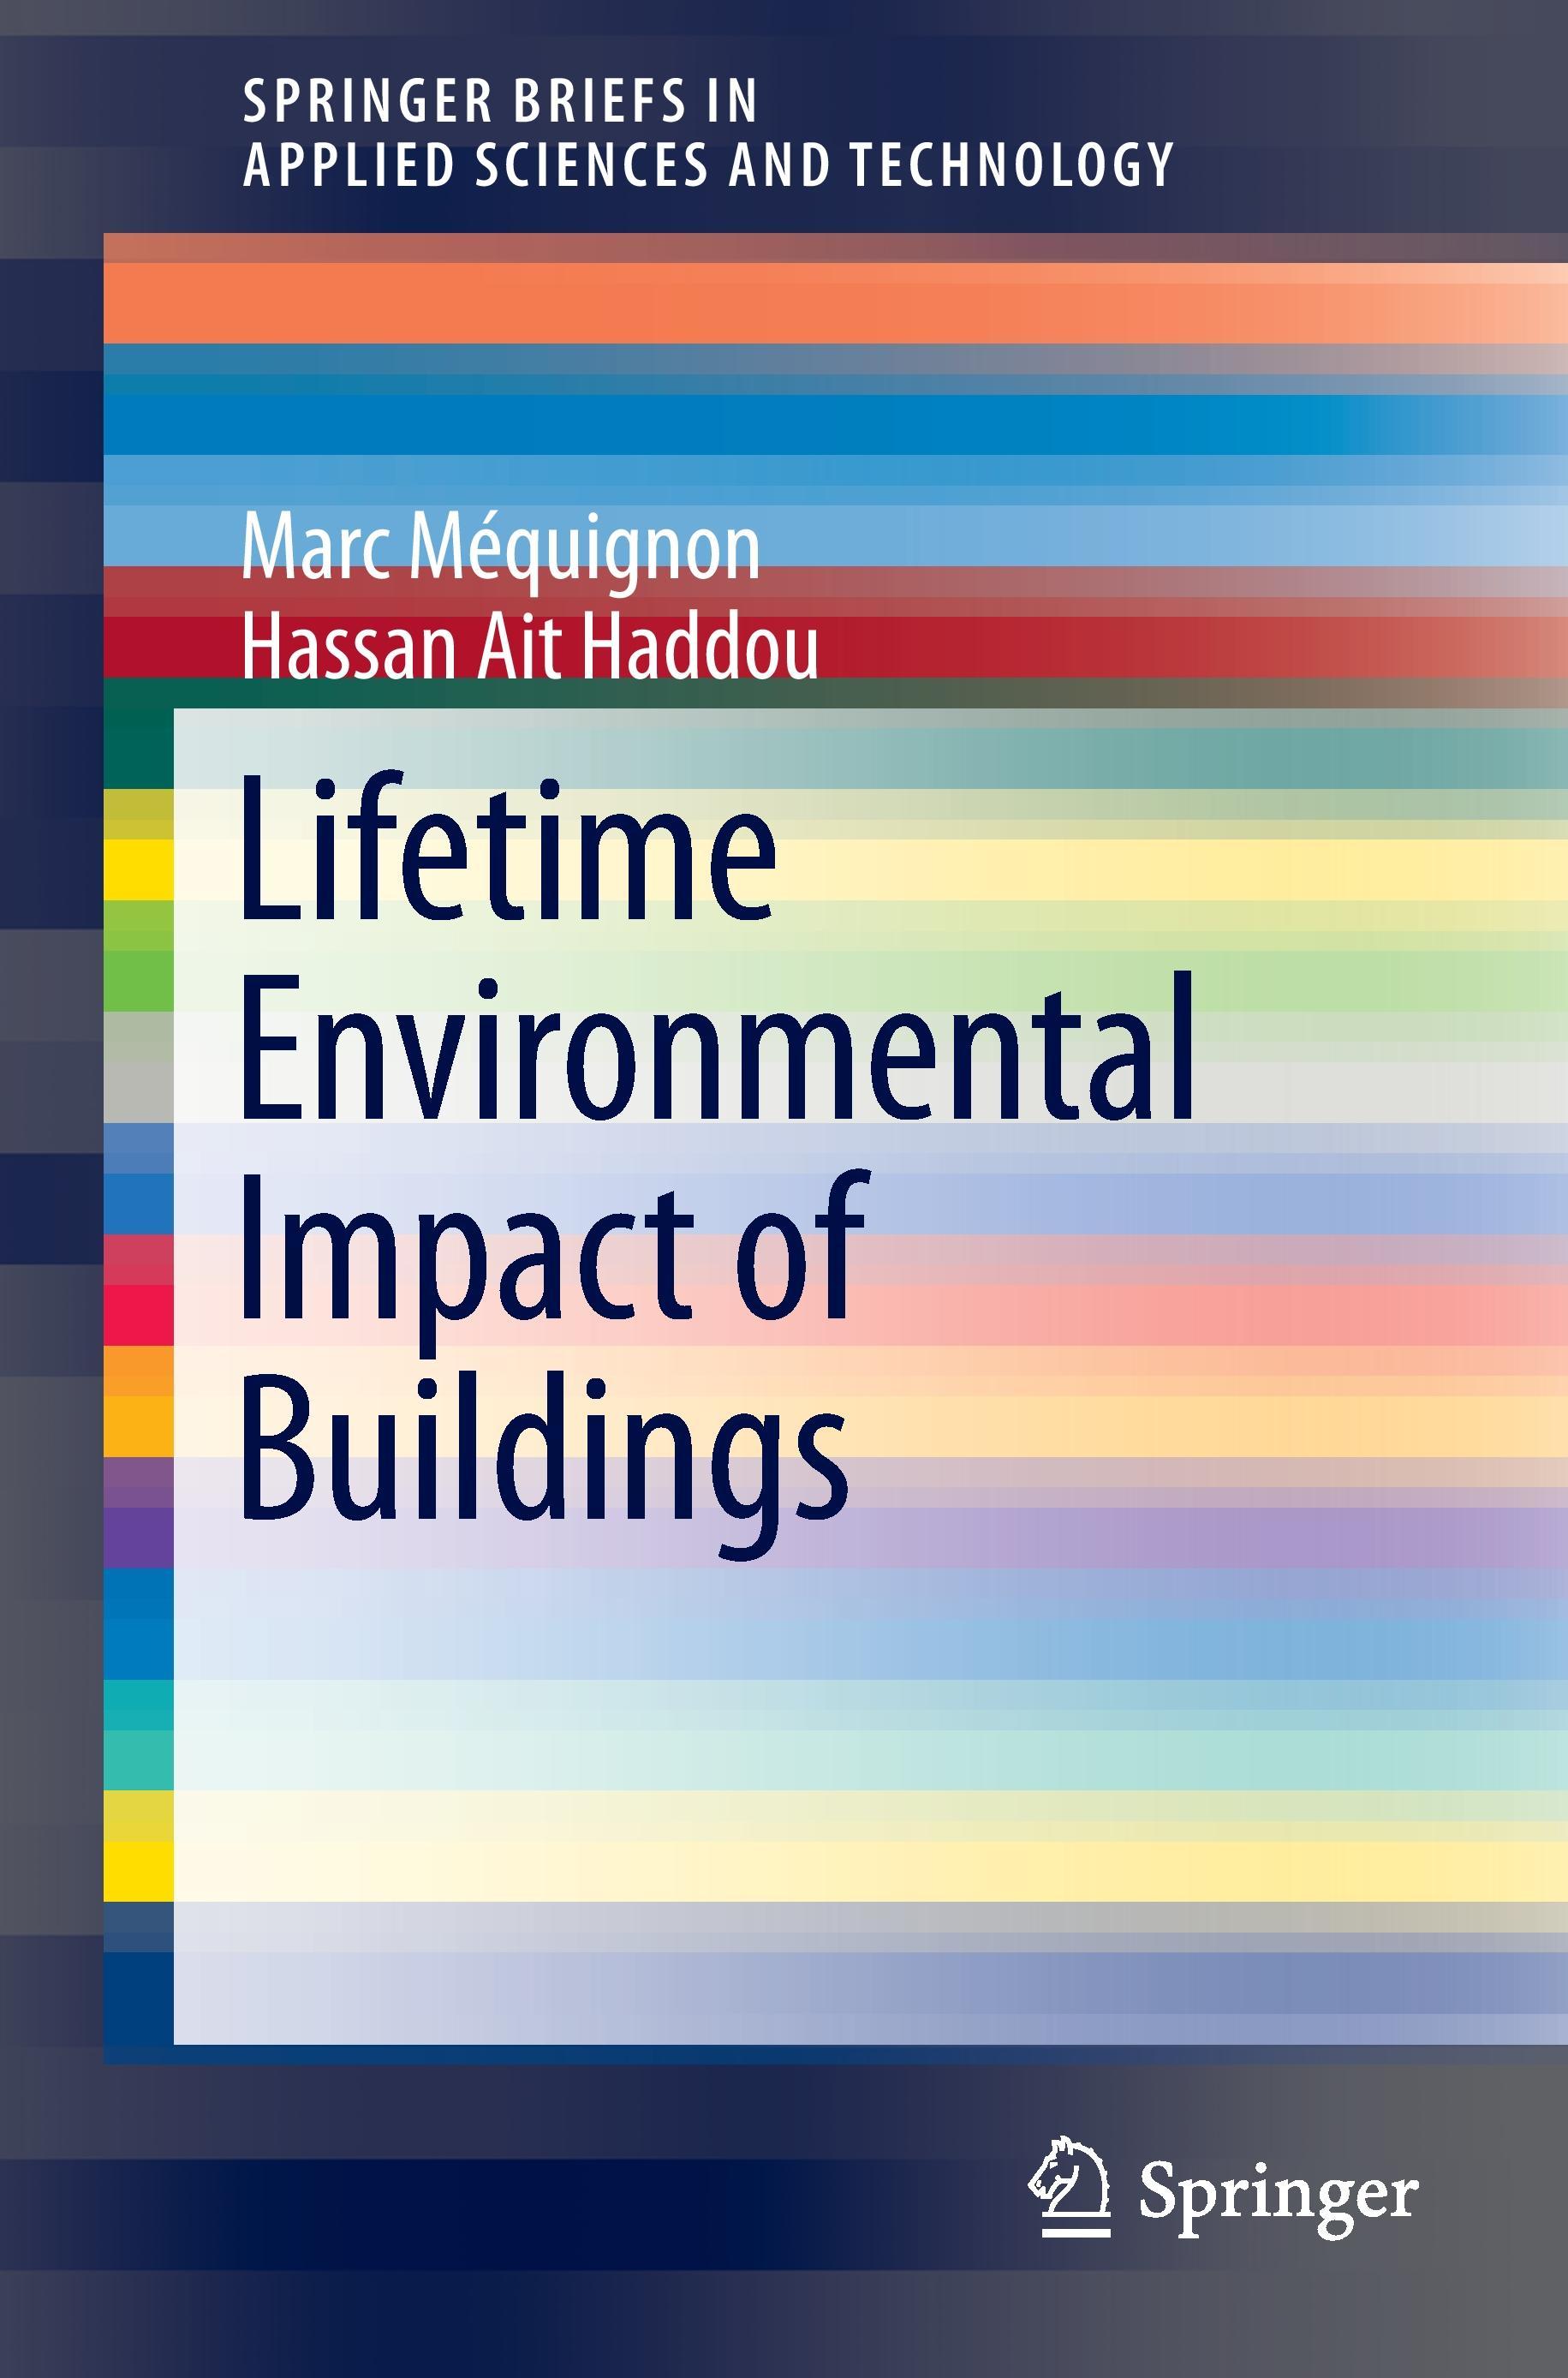 Lifetime Environmental Impact of Buildings - Marc MÃ©quignon|Hassan Ait Haddou